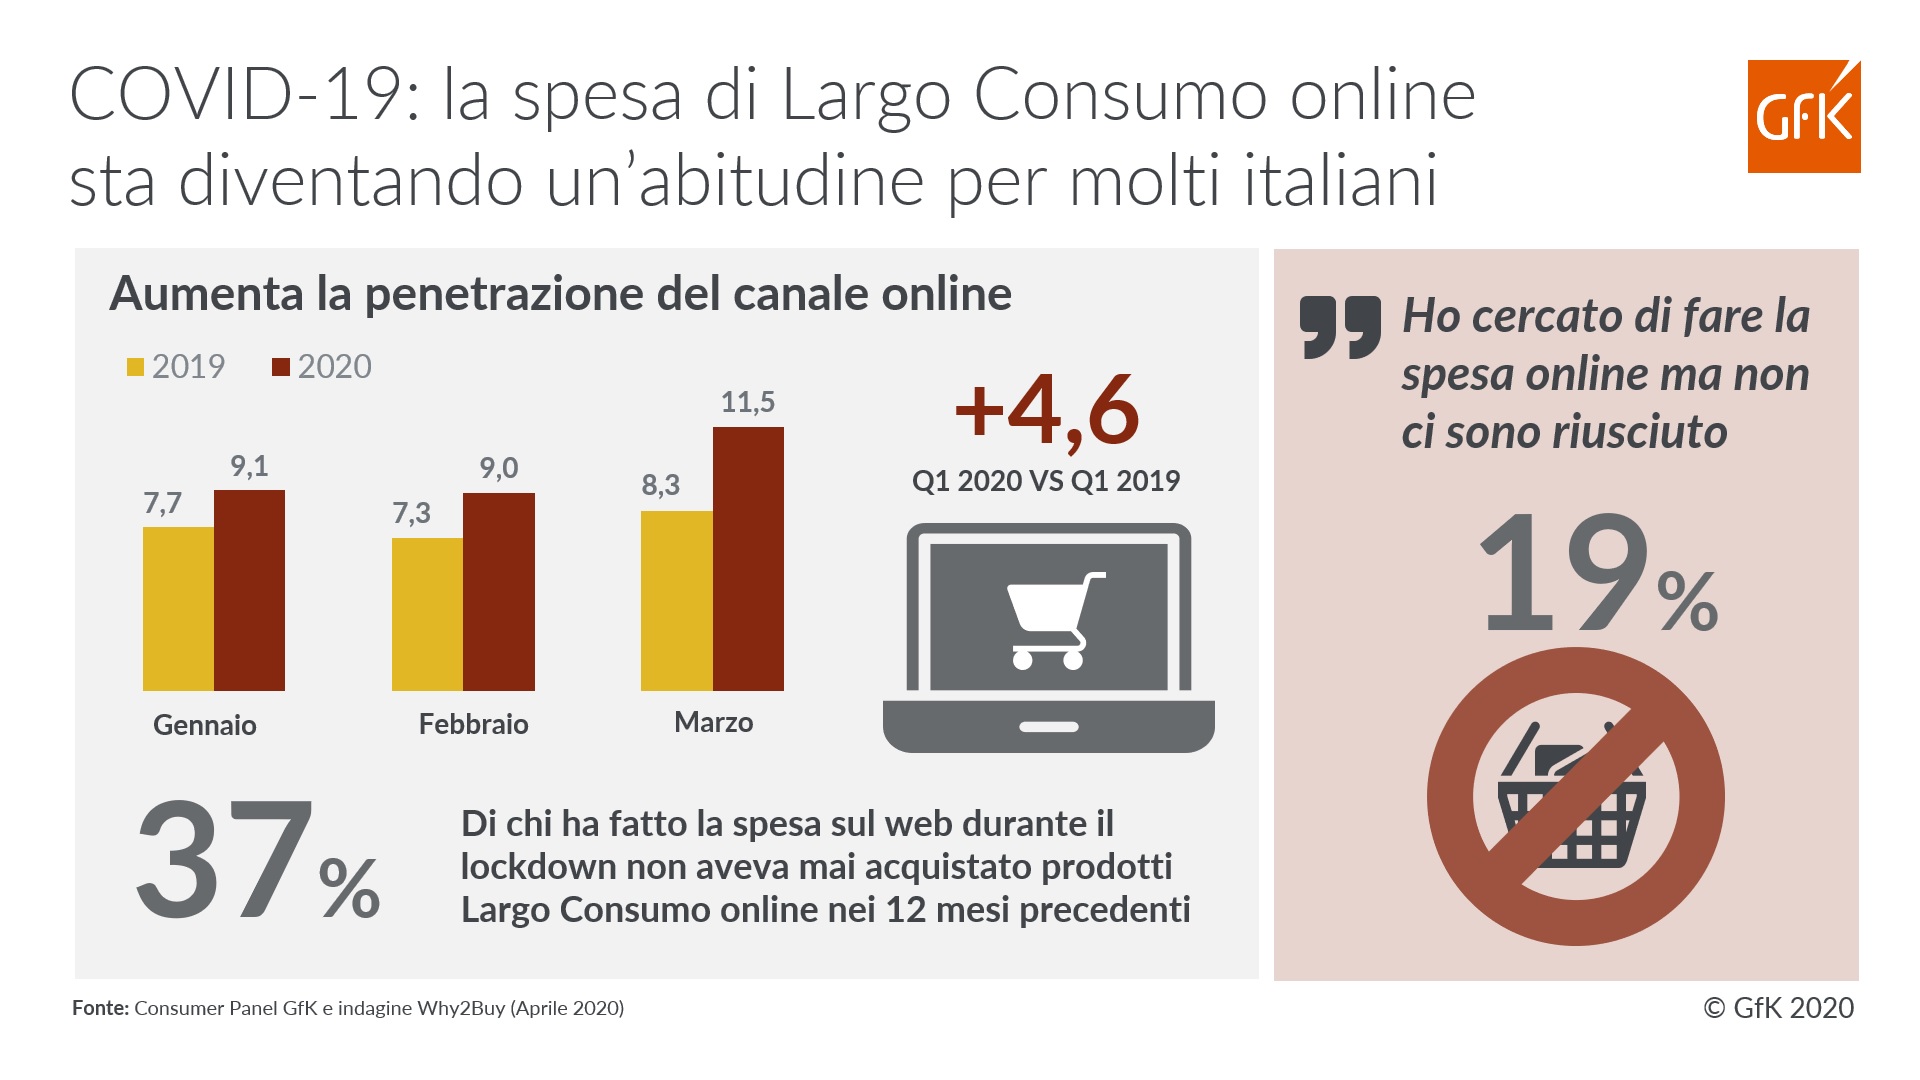 La spesa online diventa una abitudine per molti italiani